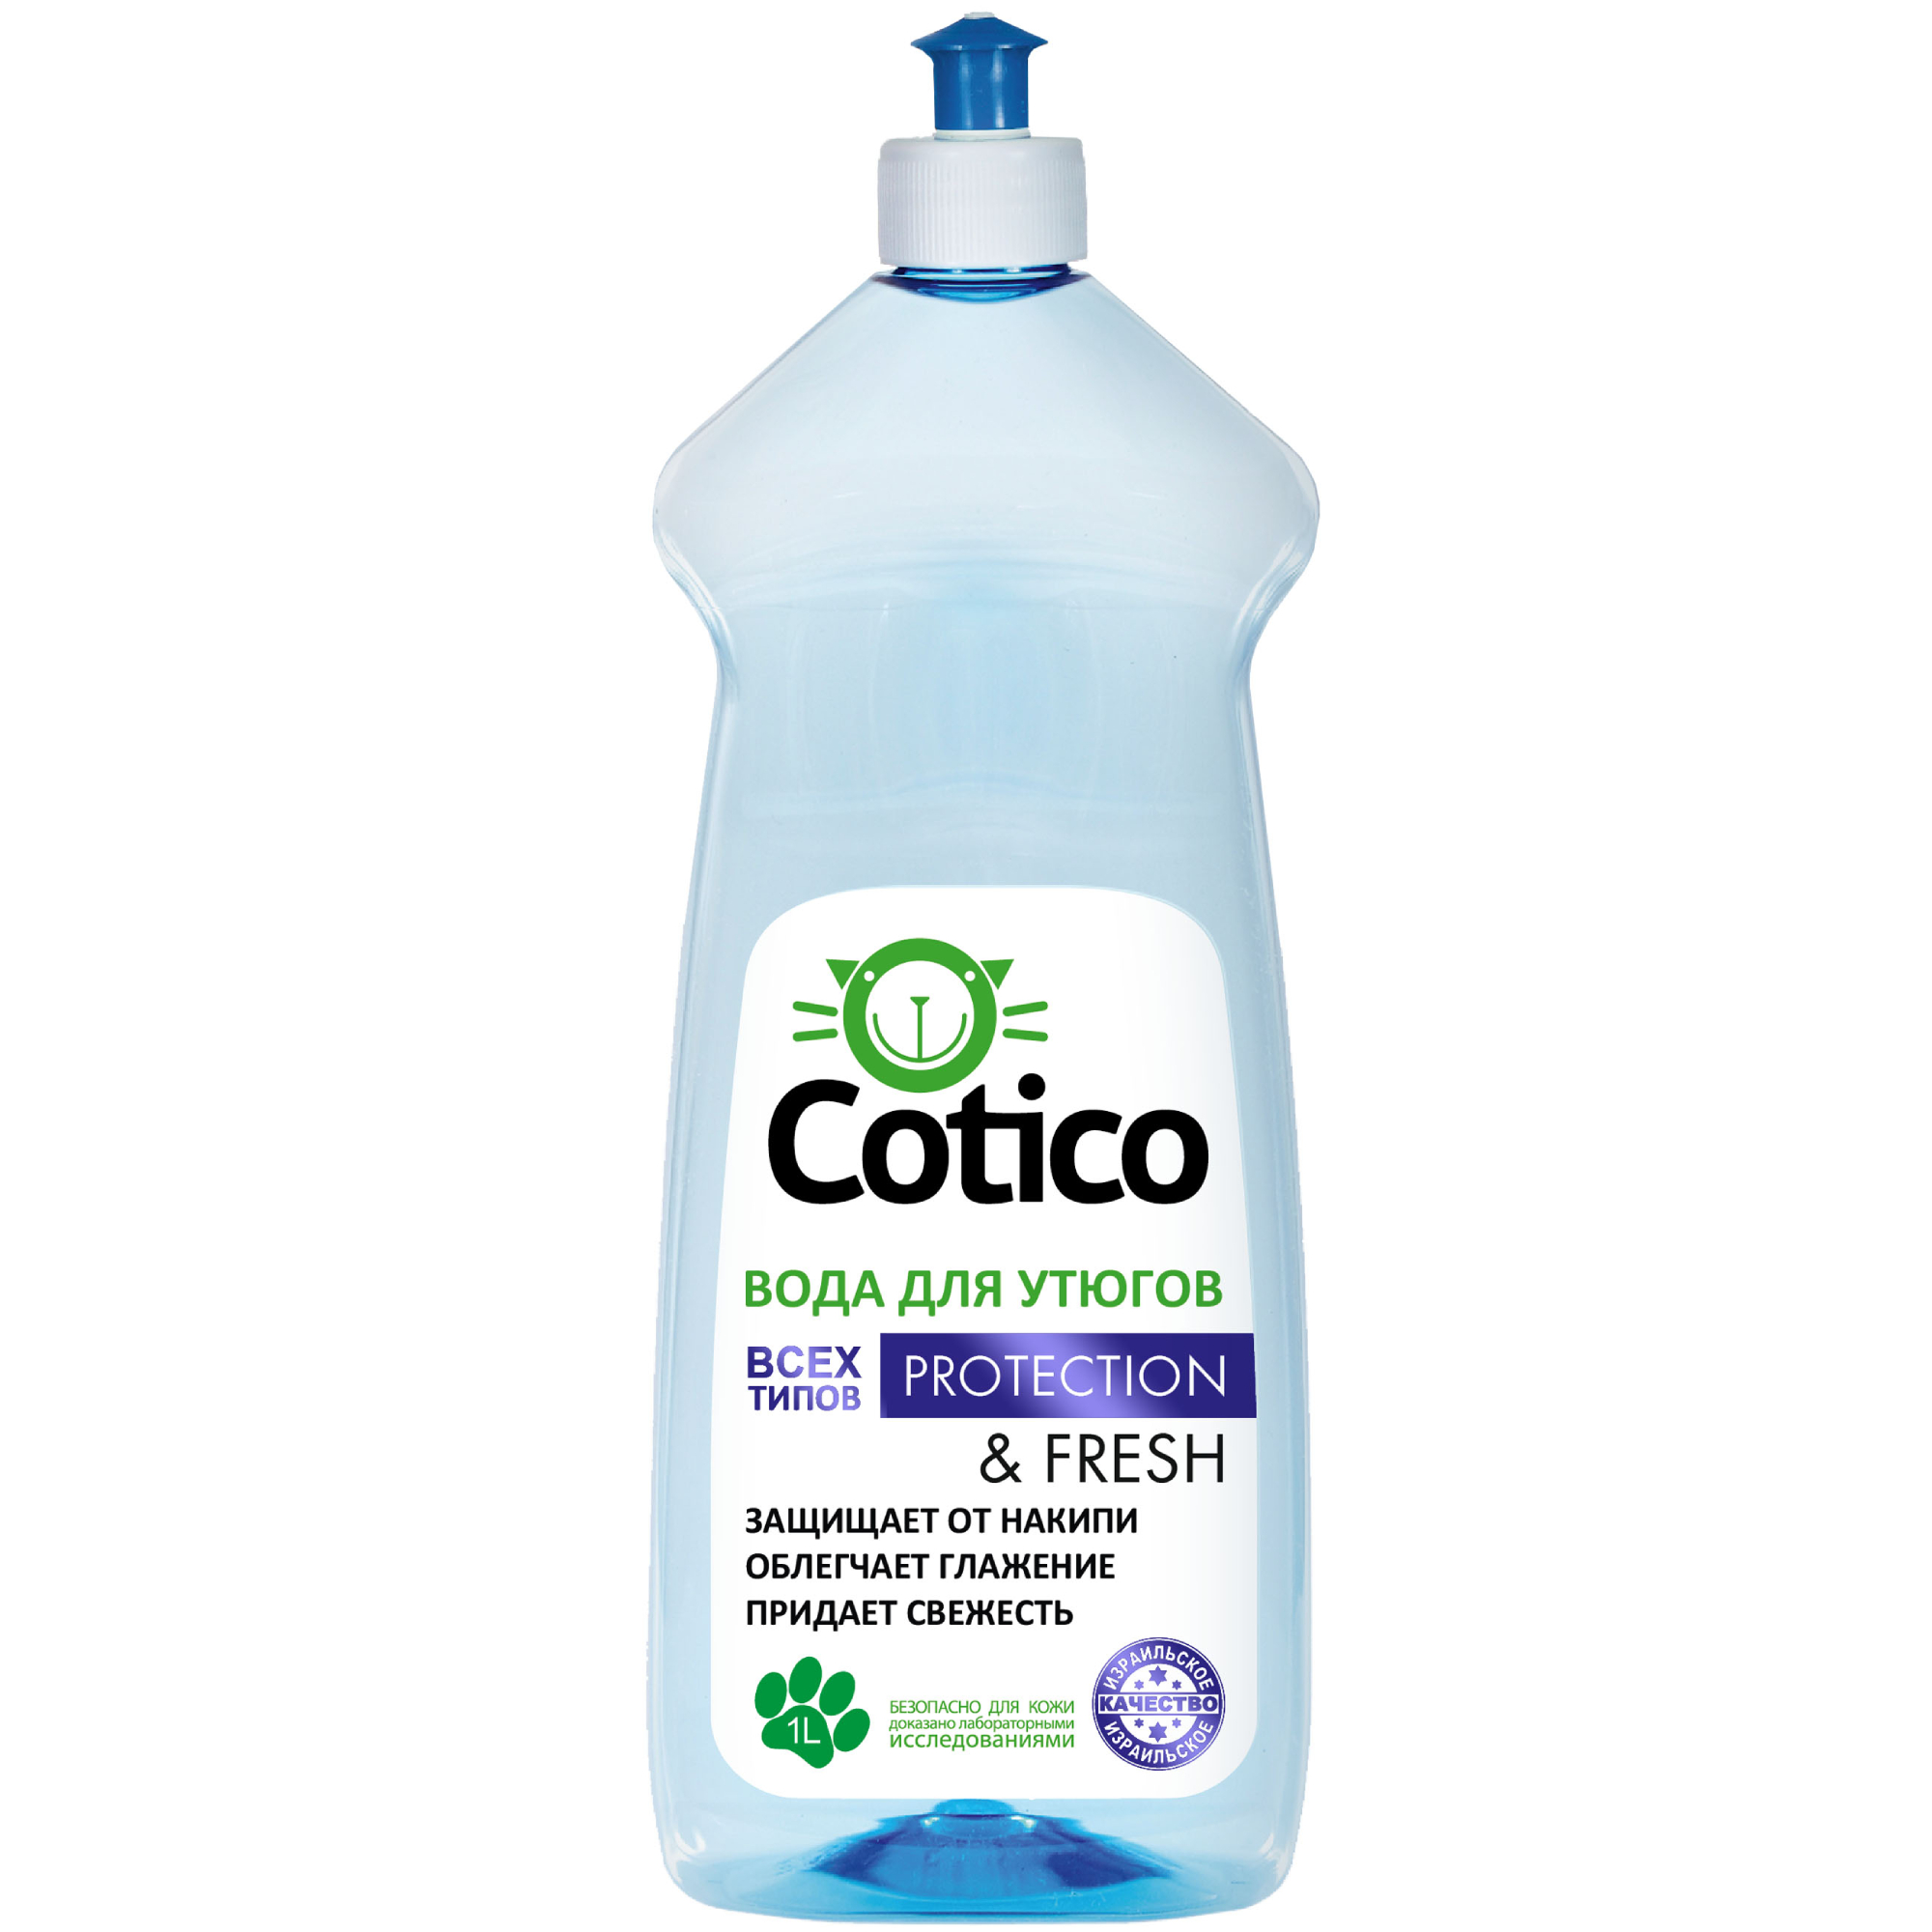 Парфюмированная вода для утюга Cotico 1 л